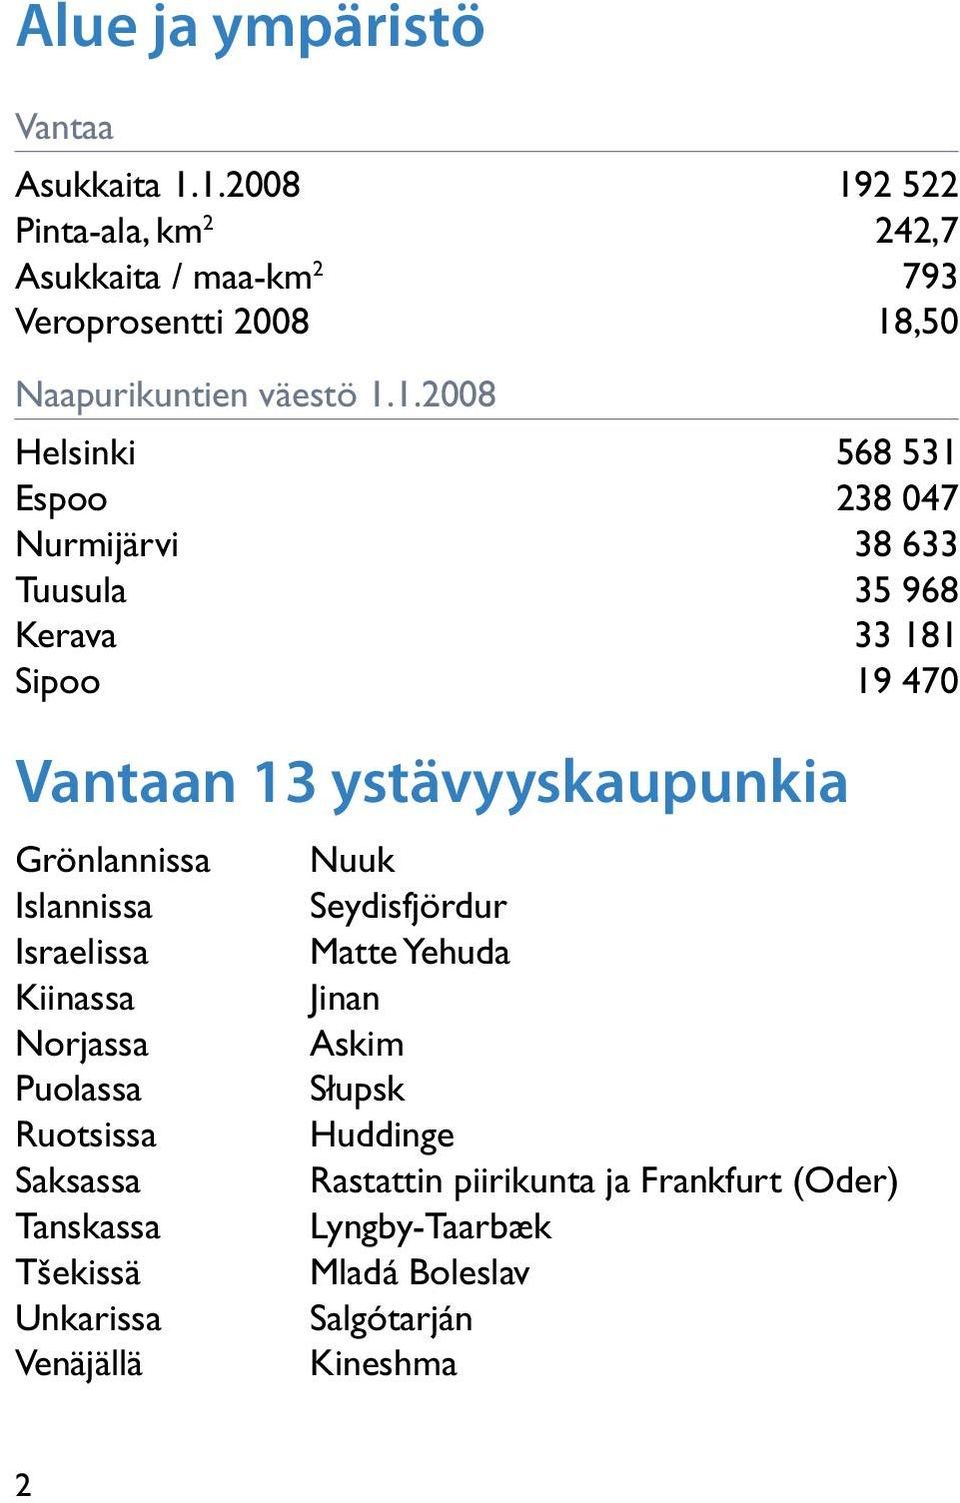 Espoo 38 047 Nurmijärvi 38 633 Tuusula 35 968 Kerava 33 181 Sipoo 19 470 Vantaan 13 ystävyyskaupunkia Grönlannissa Islannissa